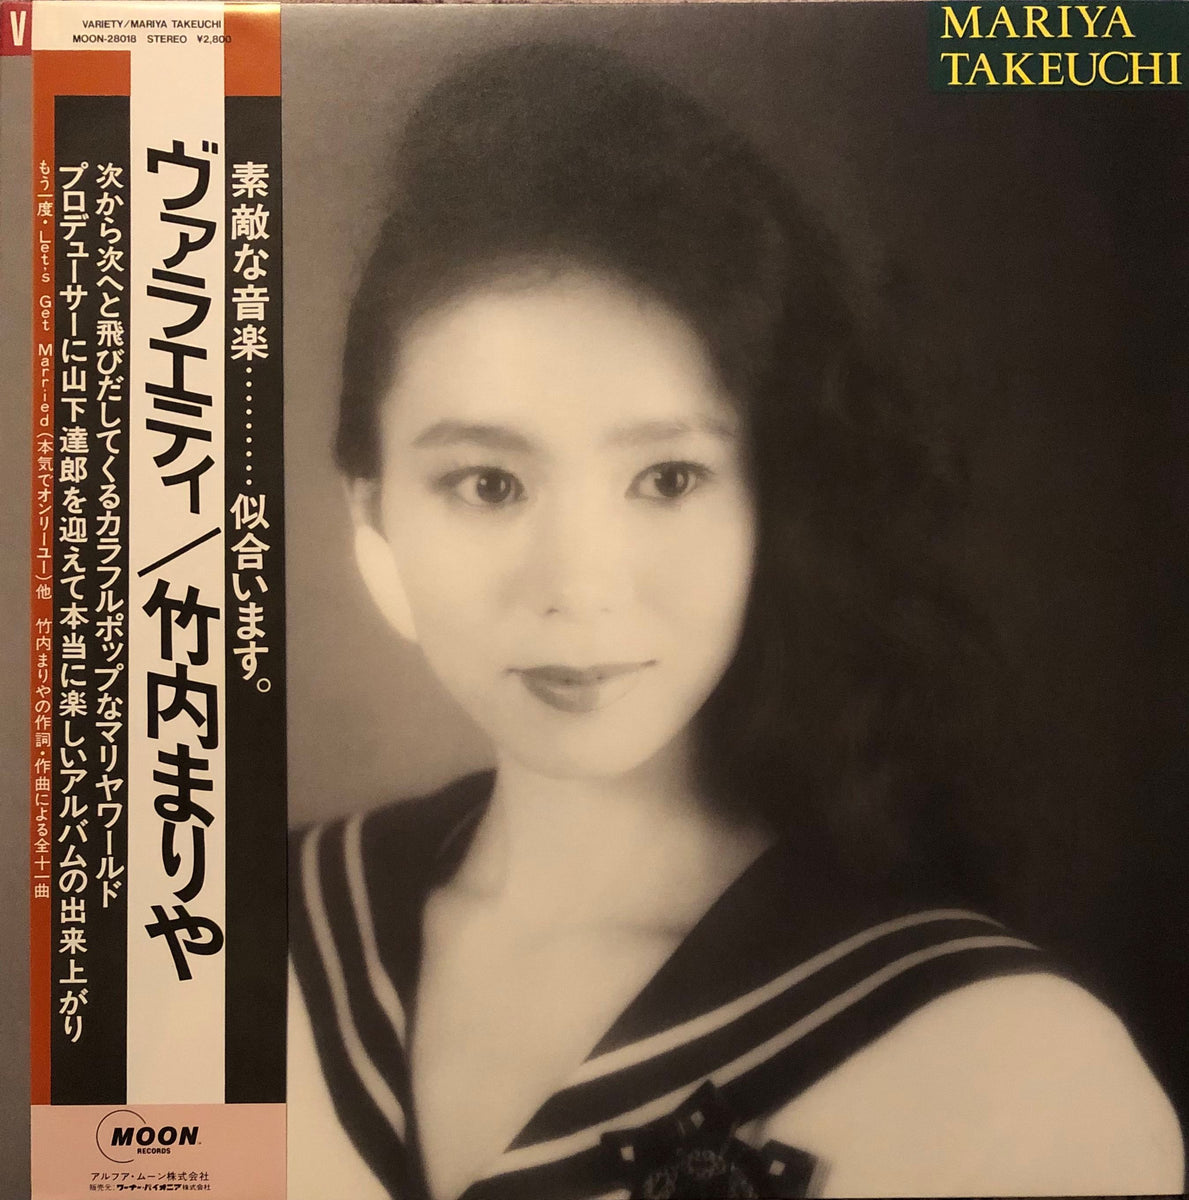 LP 竹内まりや Variety MOON28018 MOON /00400 - レコード